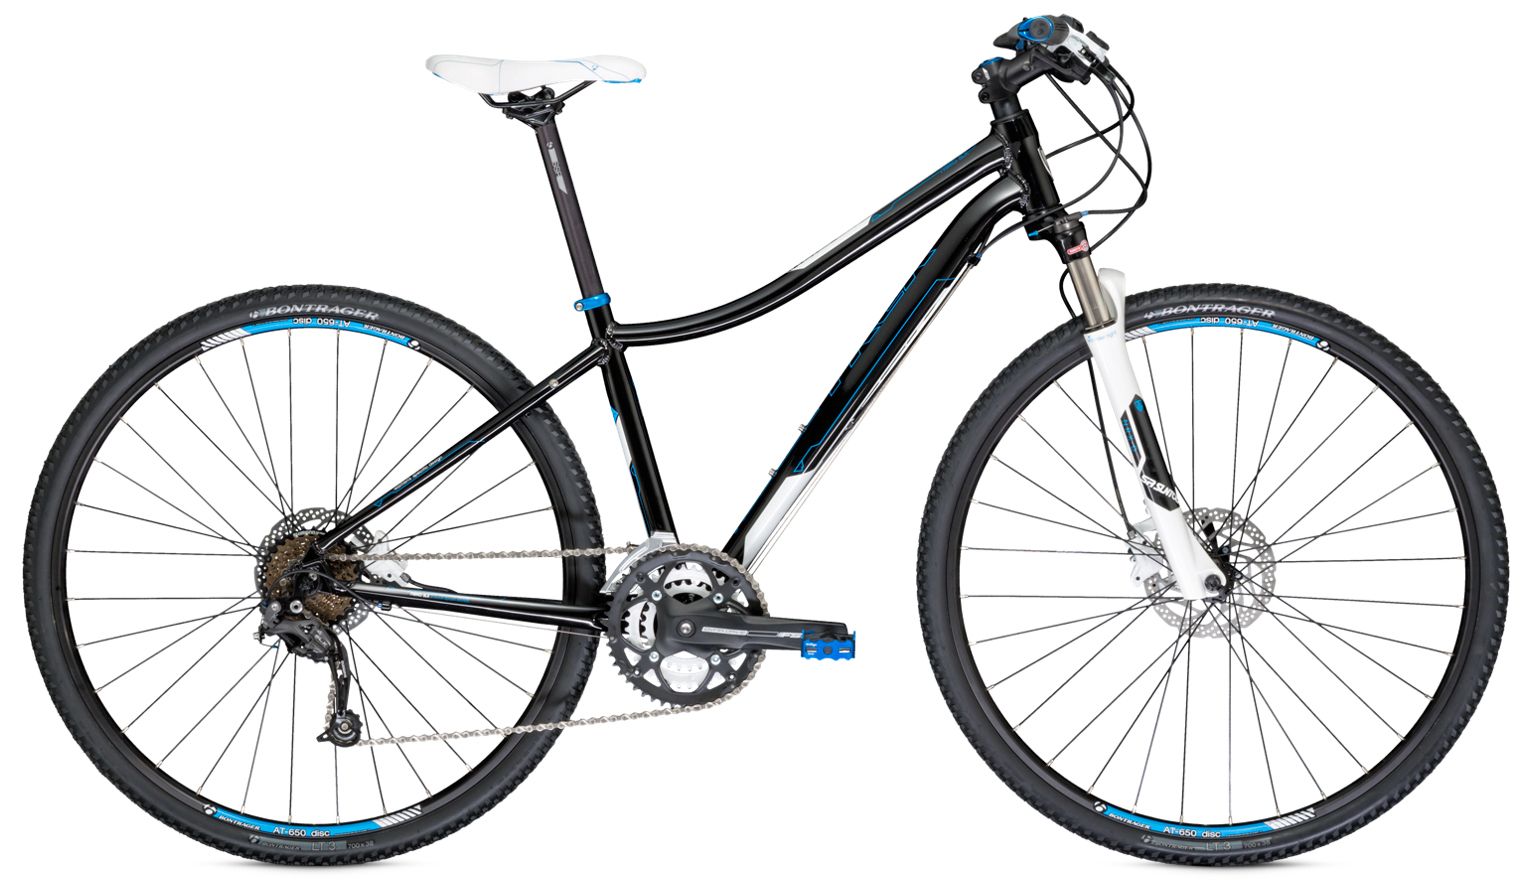  Отзывы о Женском велосипеде Trek Neko SLX WSD 2014